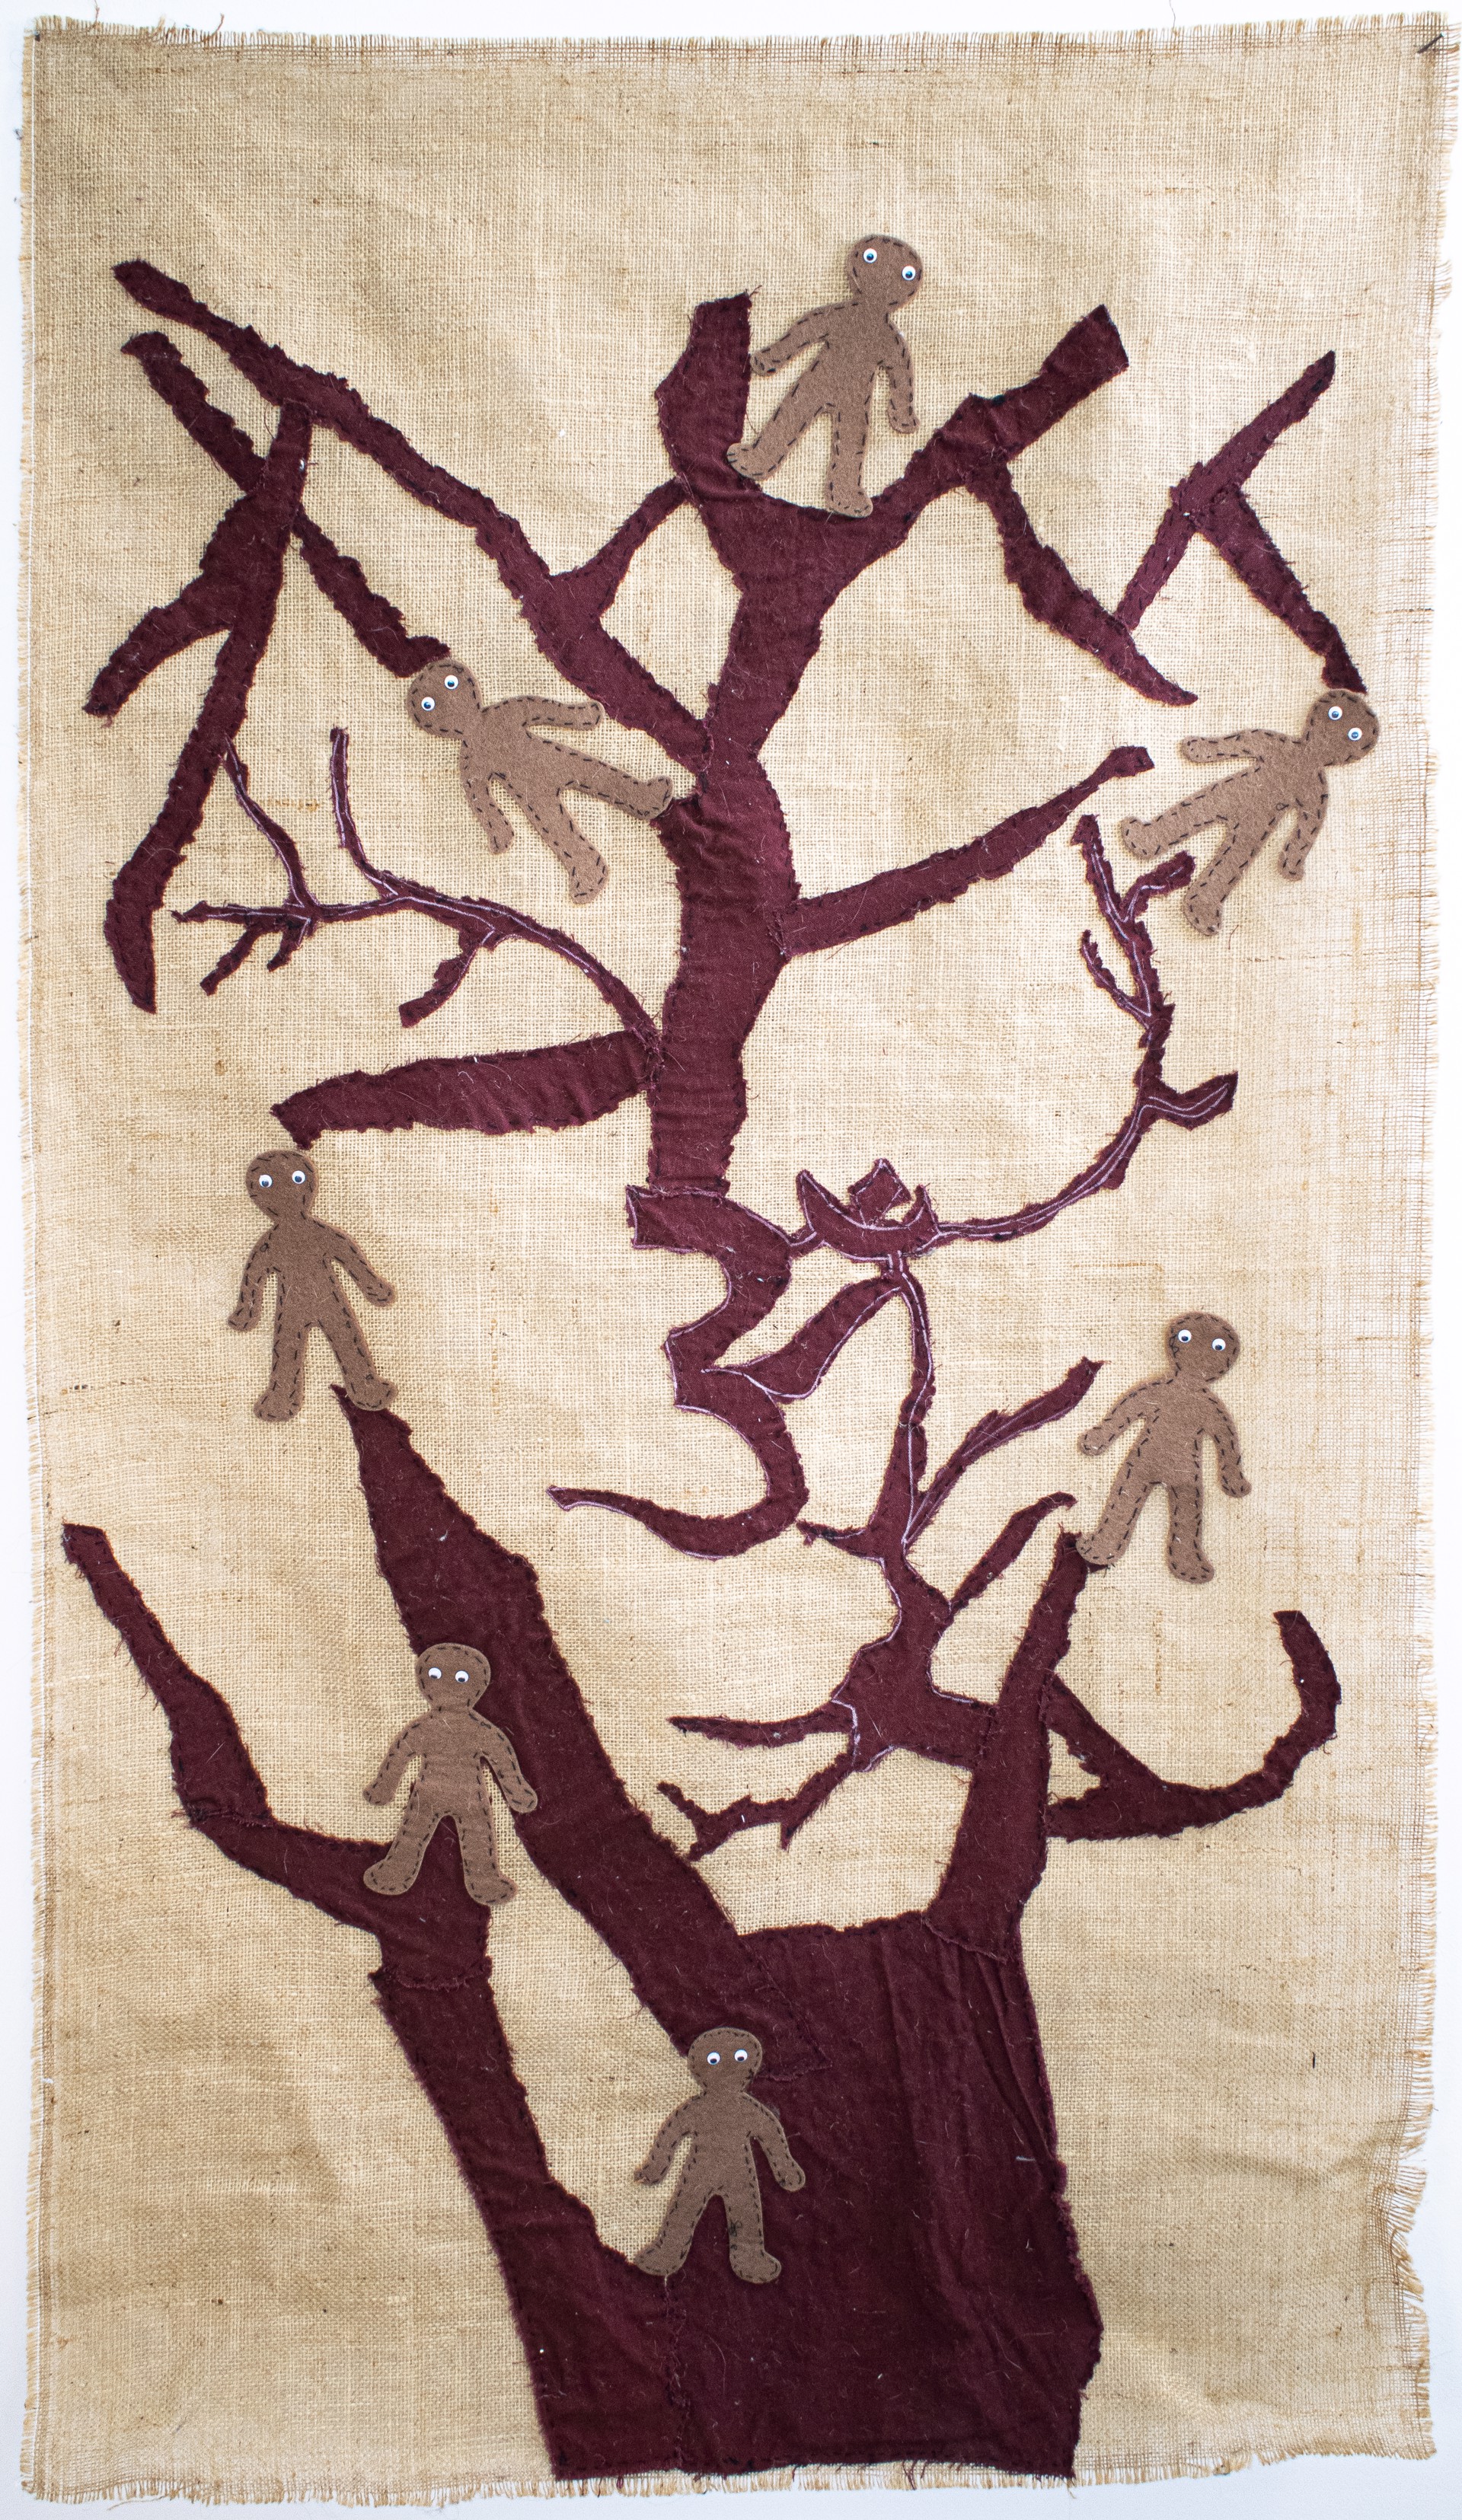 Tree Huggers by Susan Spangenberg